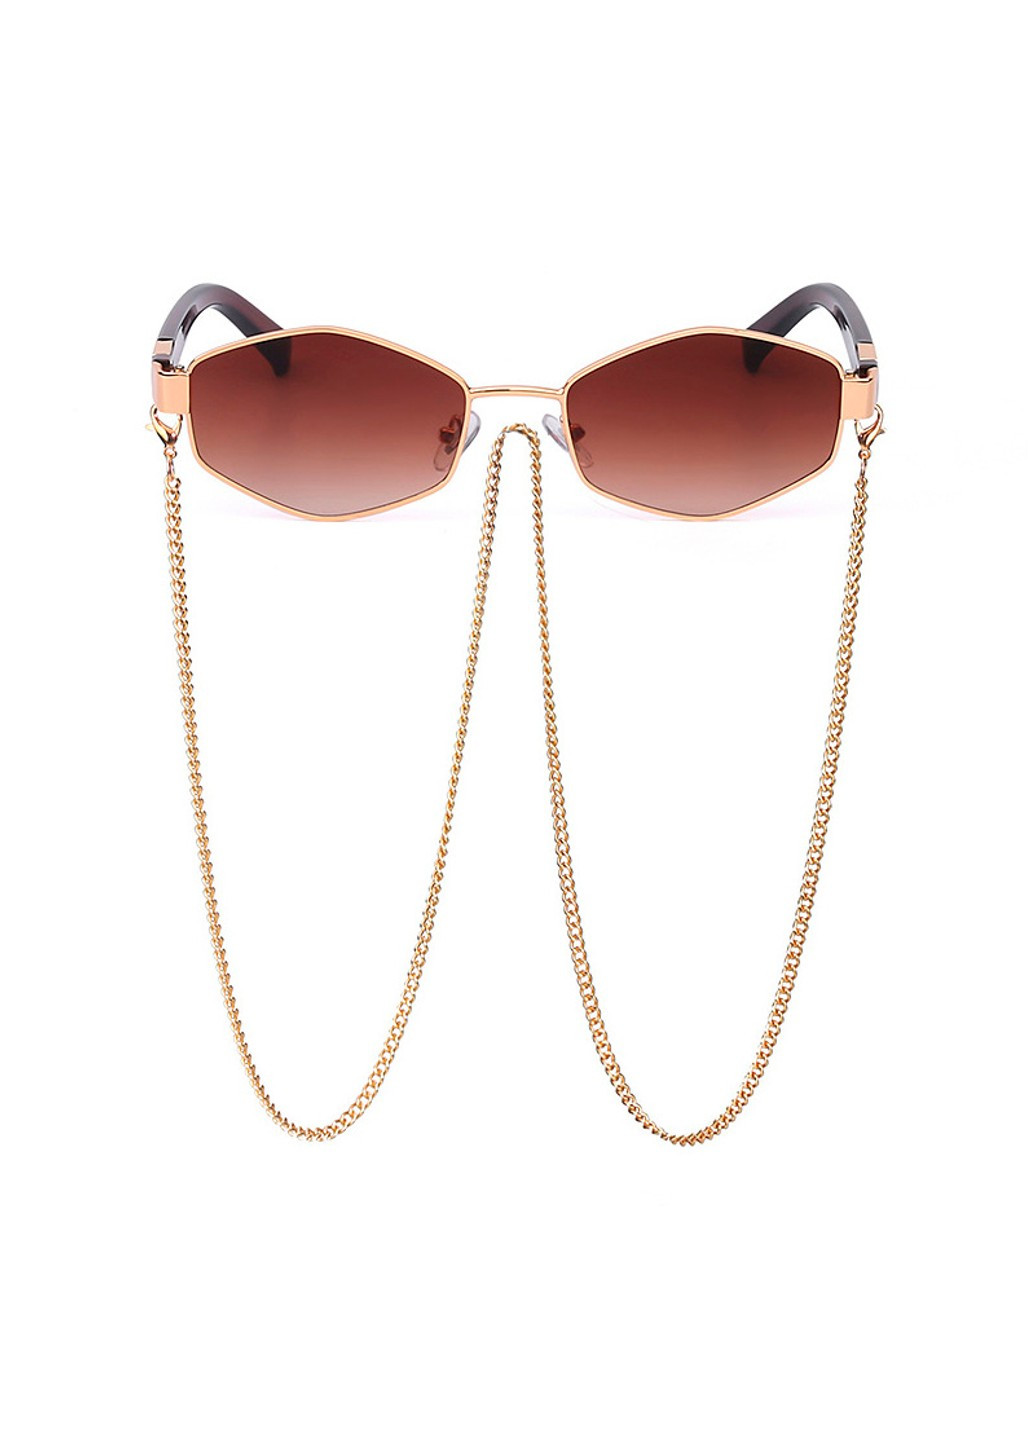 Солнцезащитные очки шестигранные c цепочкой Delight коричневые с золотом No Brand (277979513)